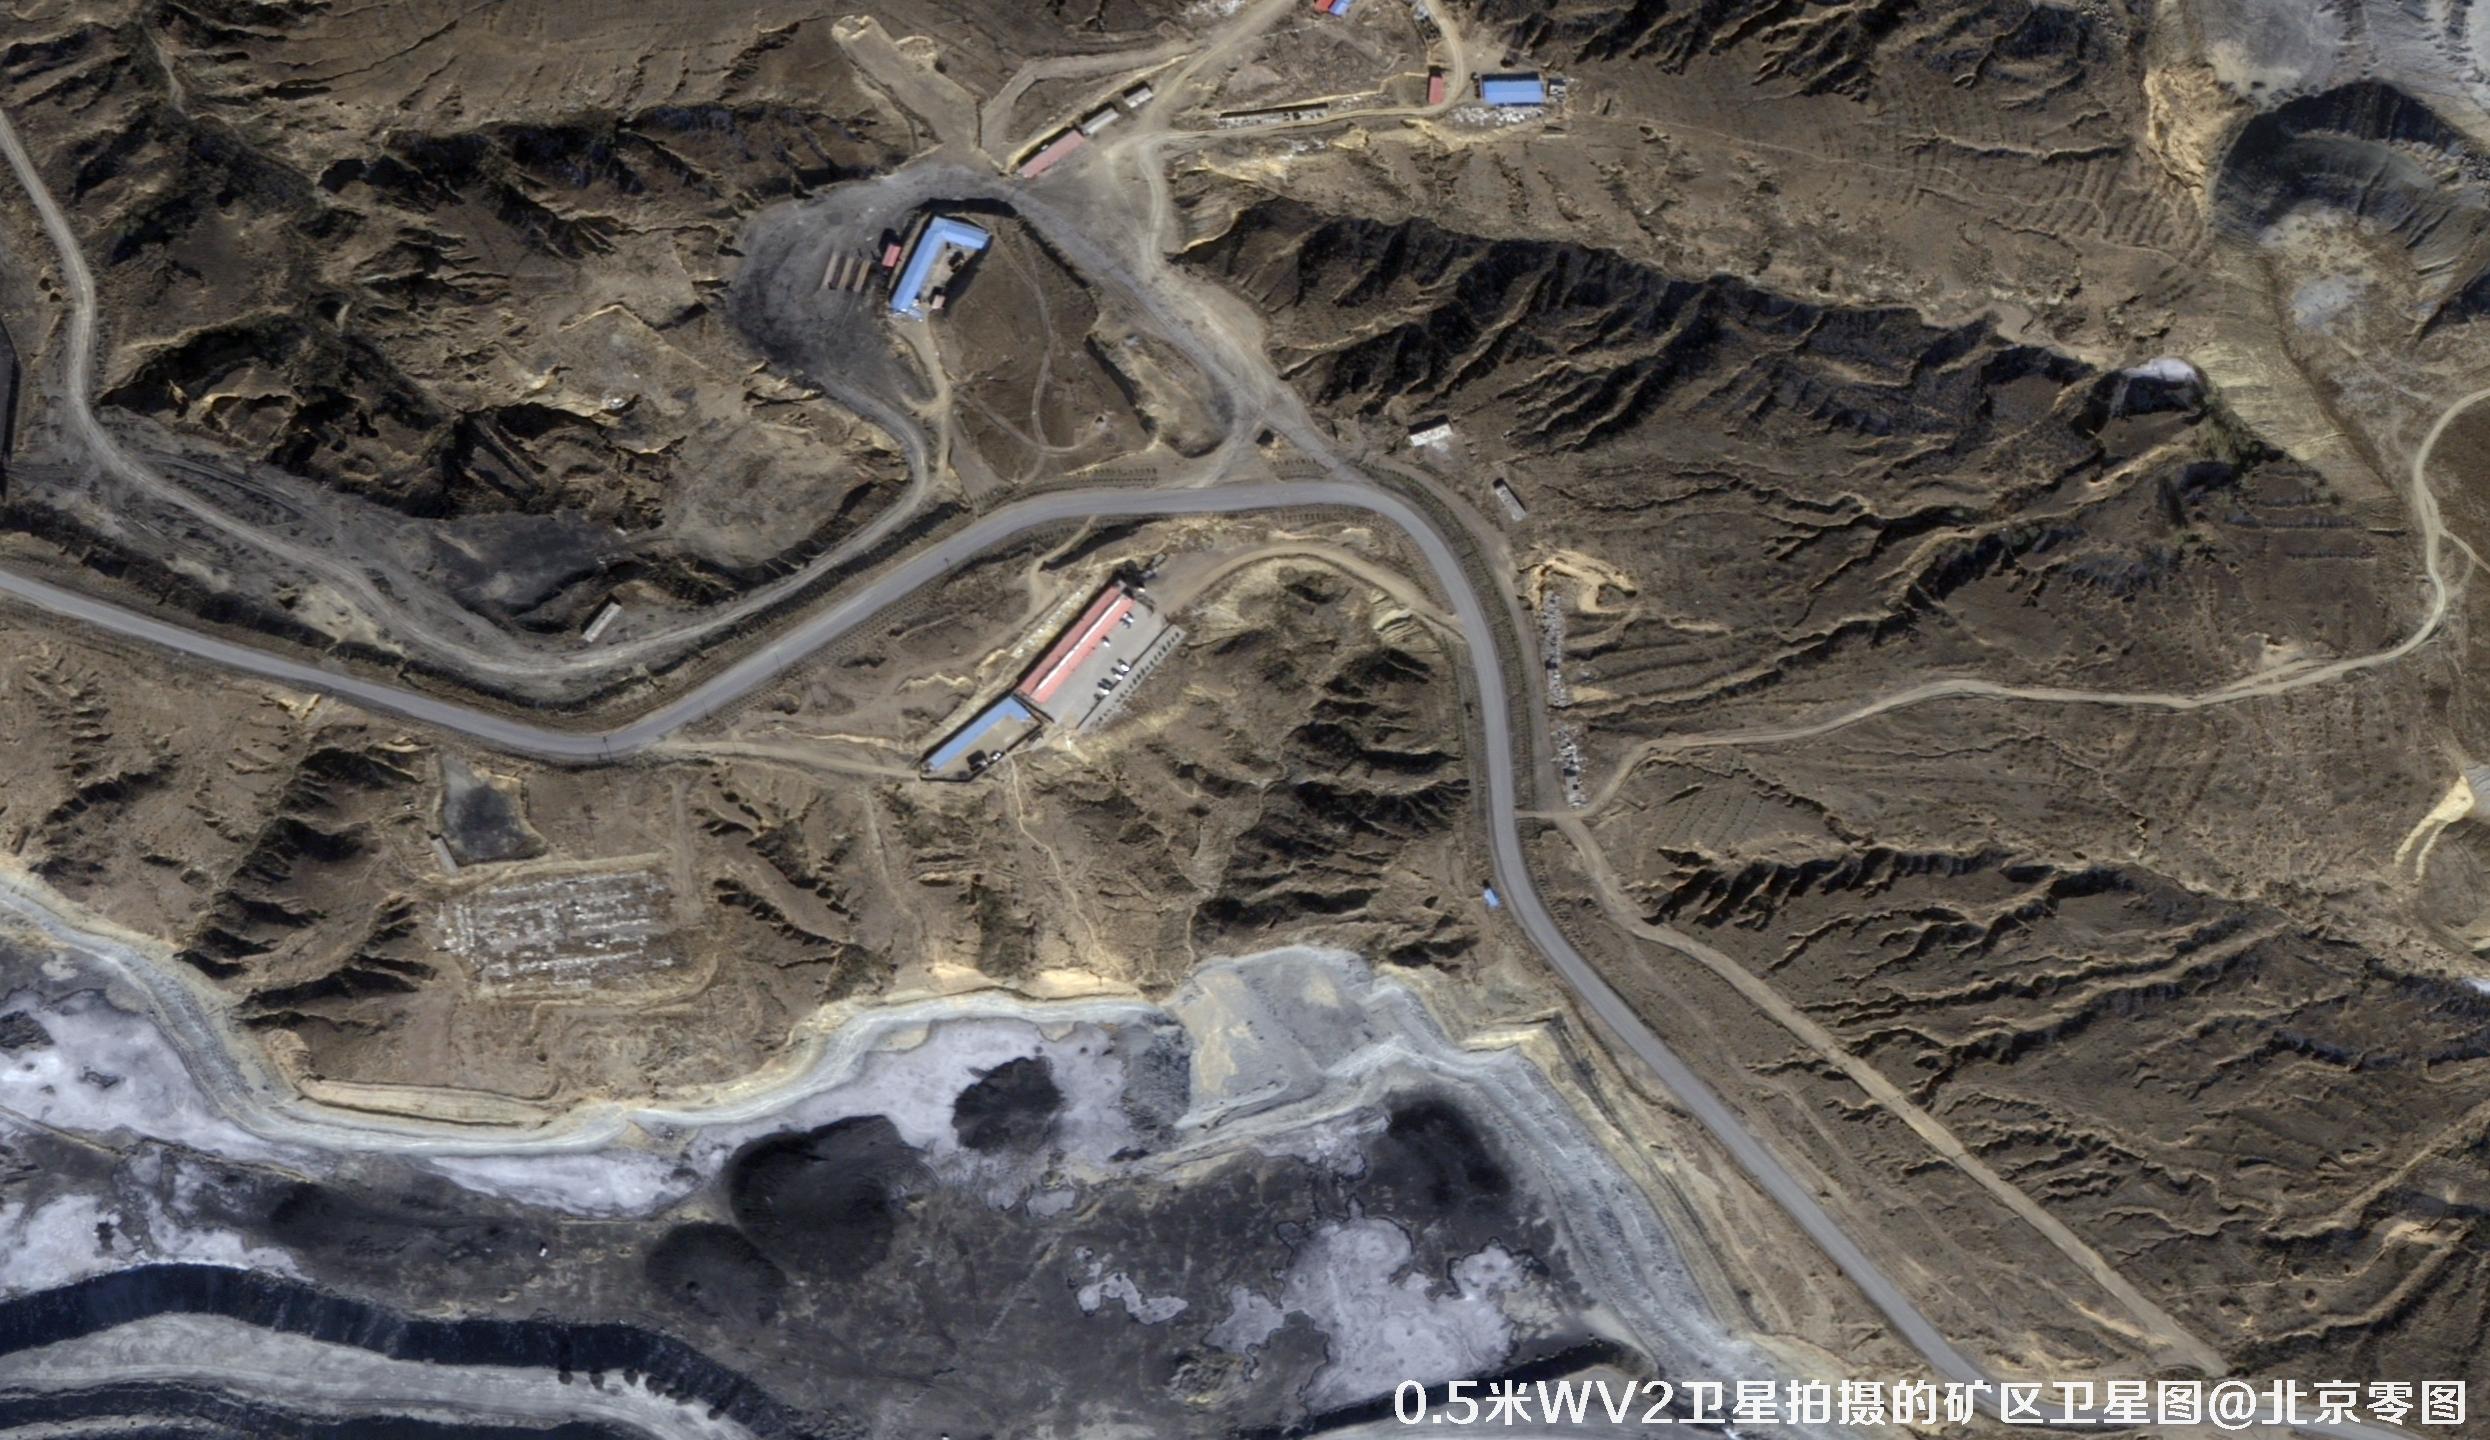 美国DigitalGlobe卫星公司旗下WV2卫星拍摄的高清图片